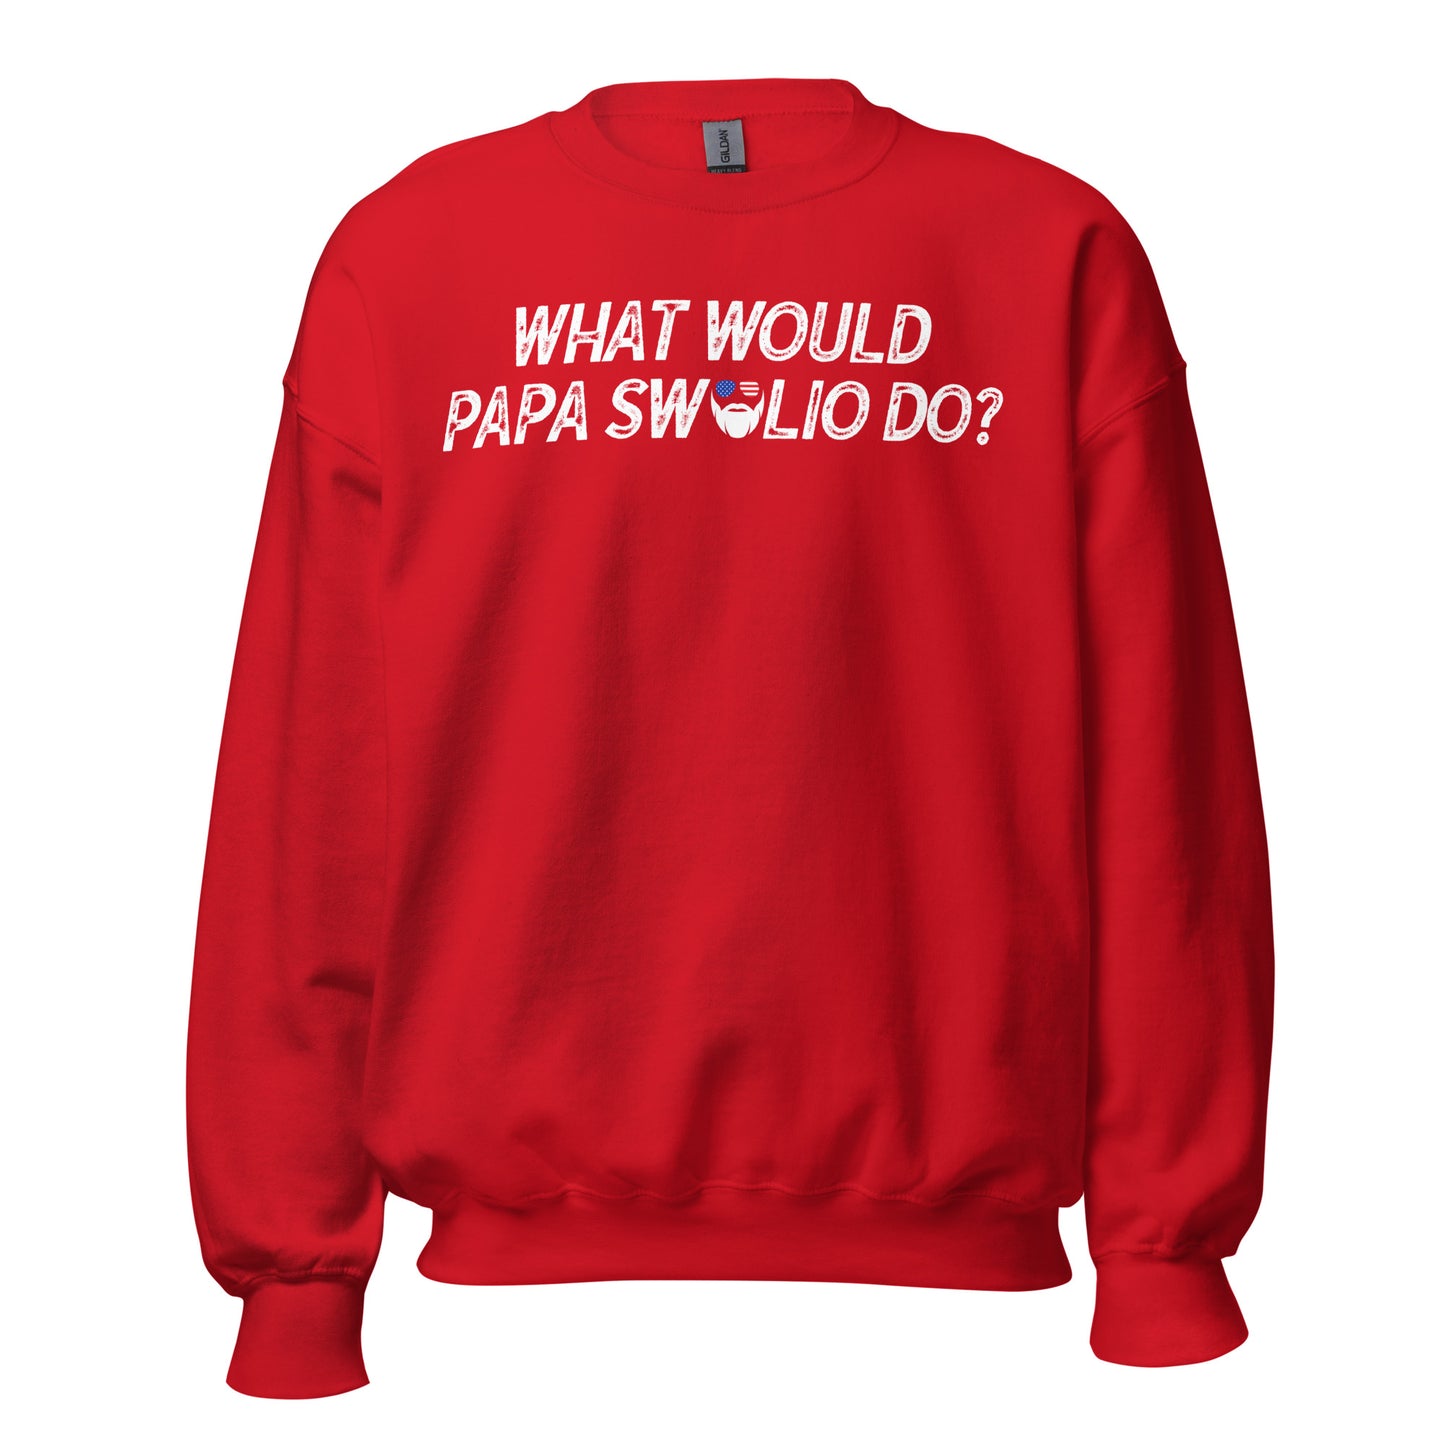 What Would Papa Swolio Do? Sweatshirt